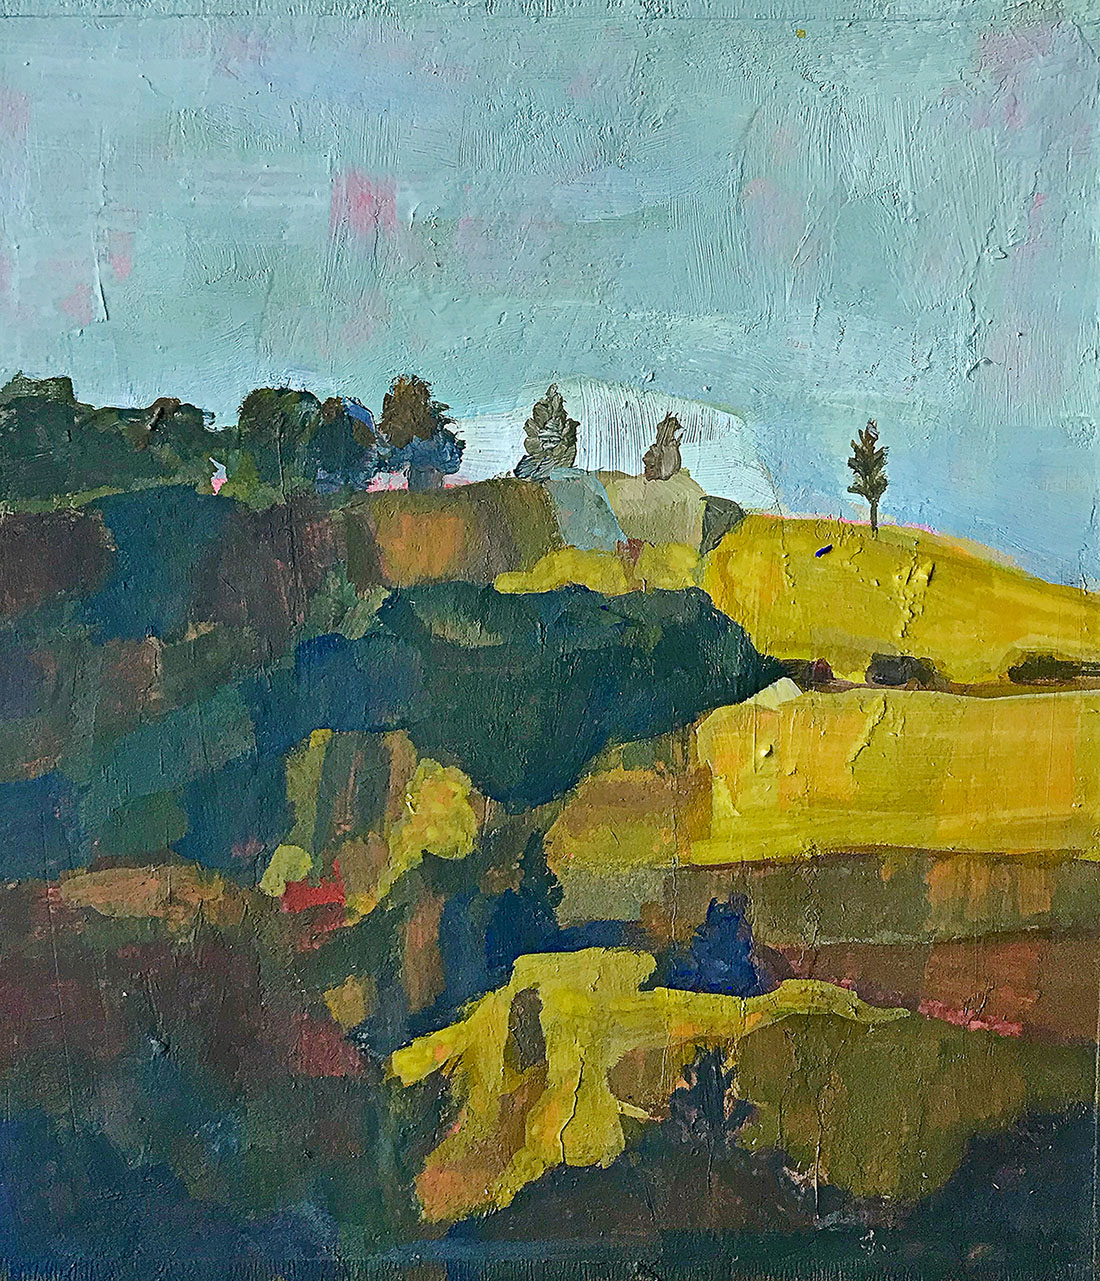 On the Hilltop, gouache painting by Bridgette Guerzon Mills